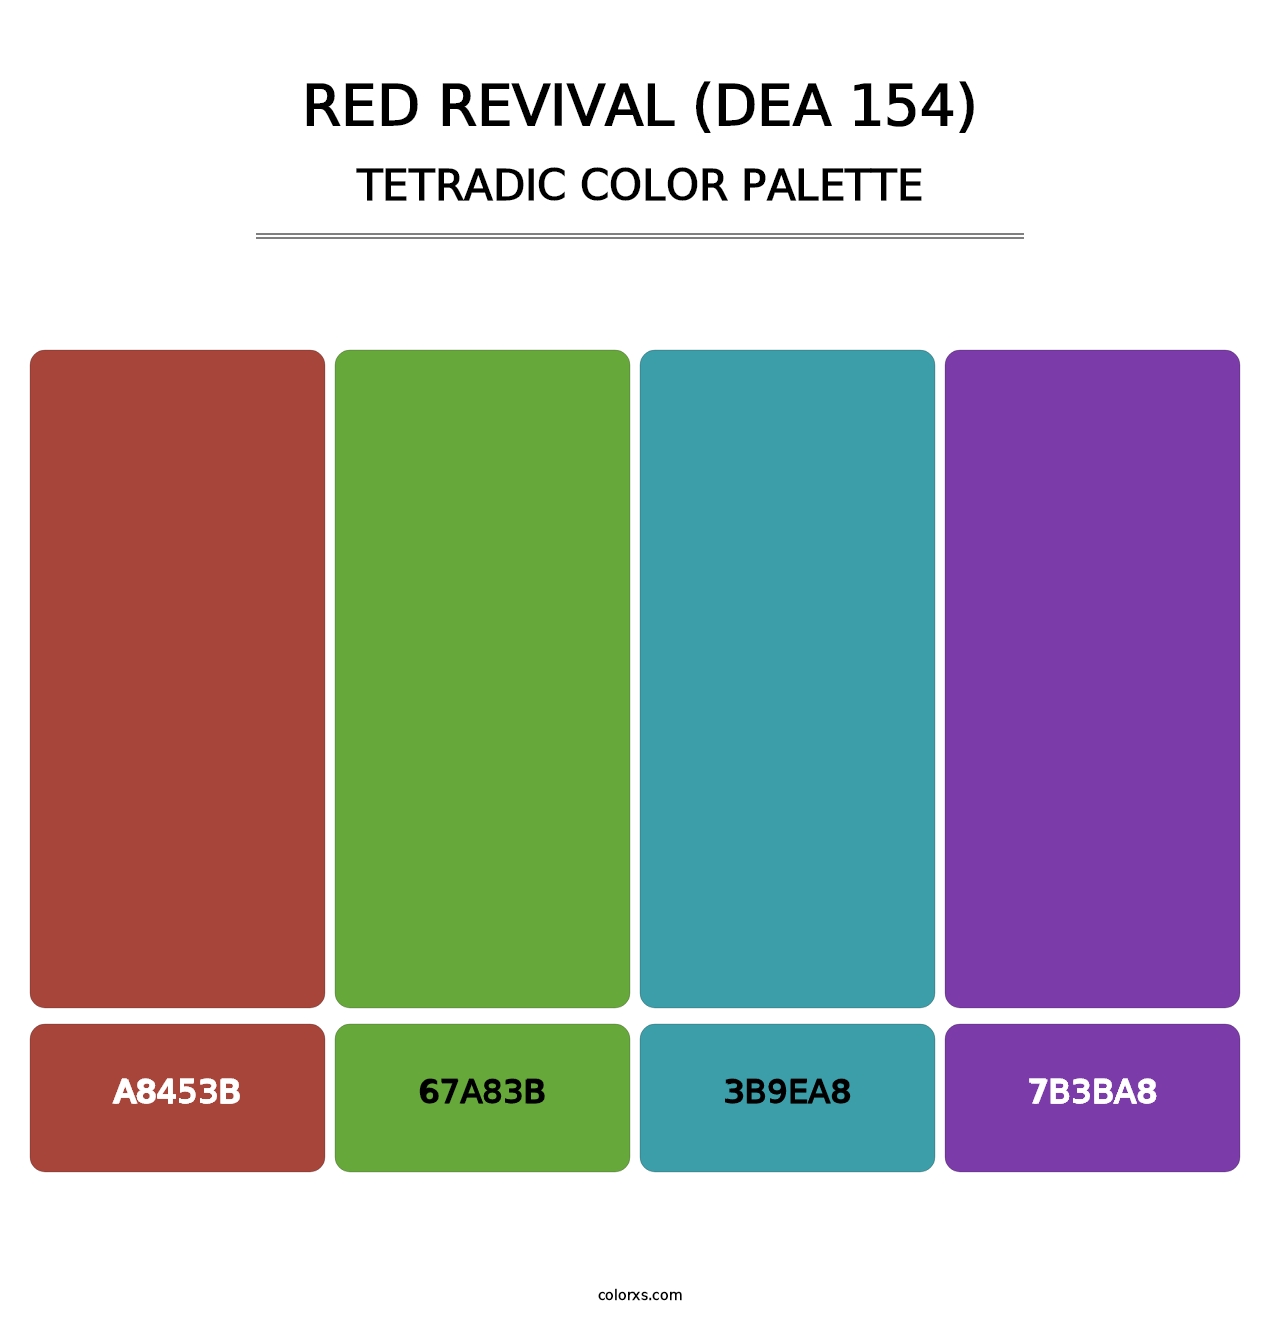 Red Revival (DEA 154) - Tetradic Color Palette